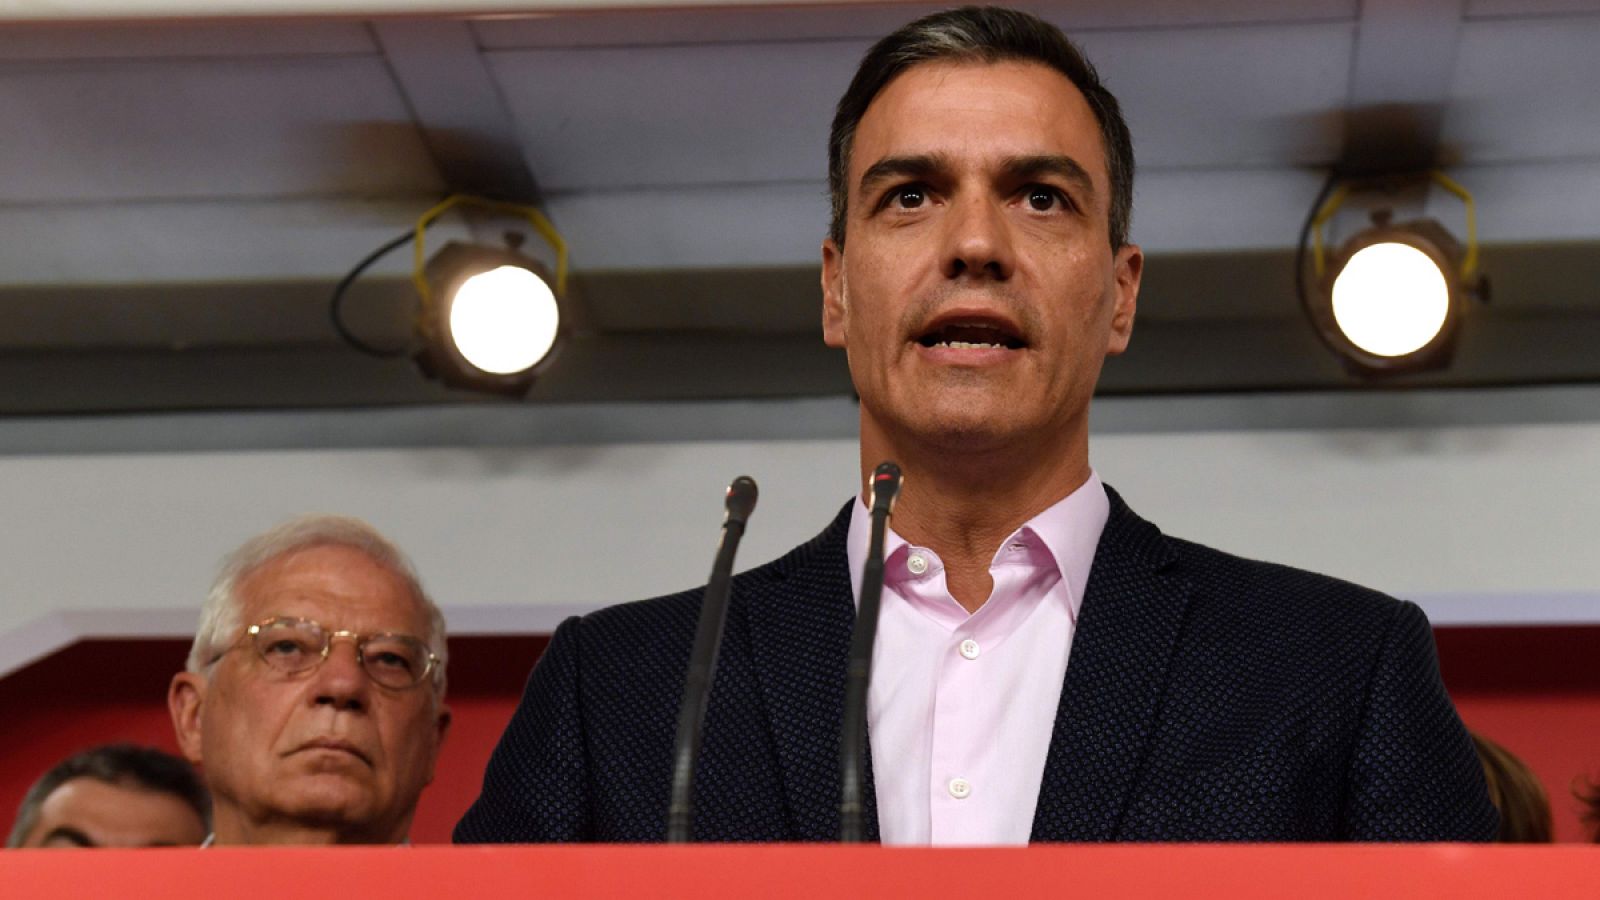 El PSOE forma un equipo para negociar los pactos tras las elecciones del 26M - RTVE.es